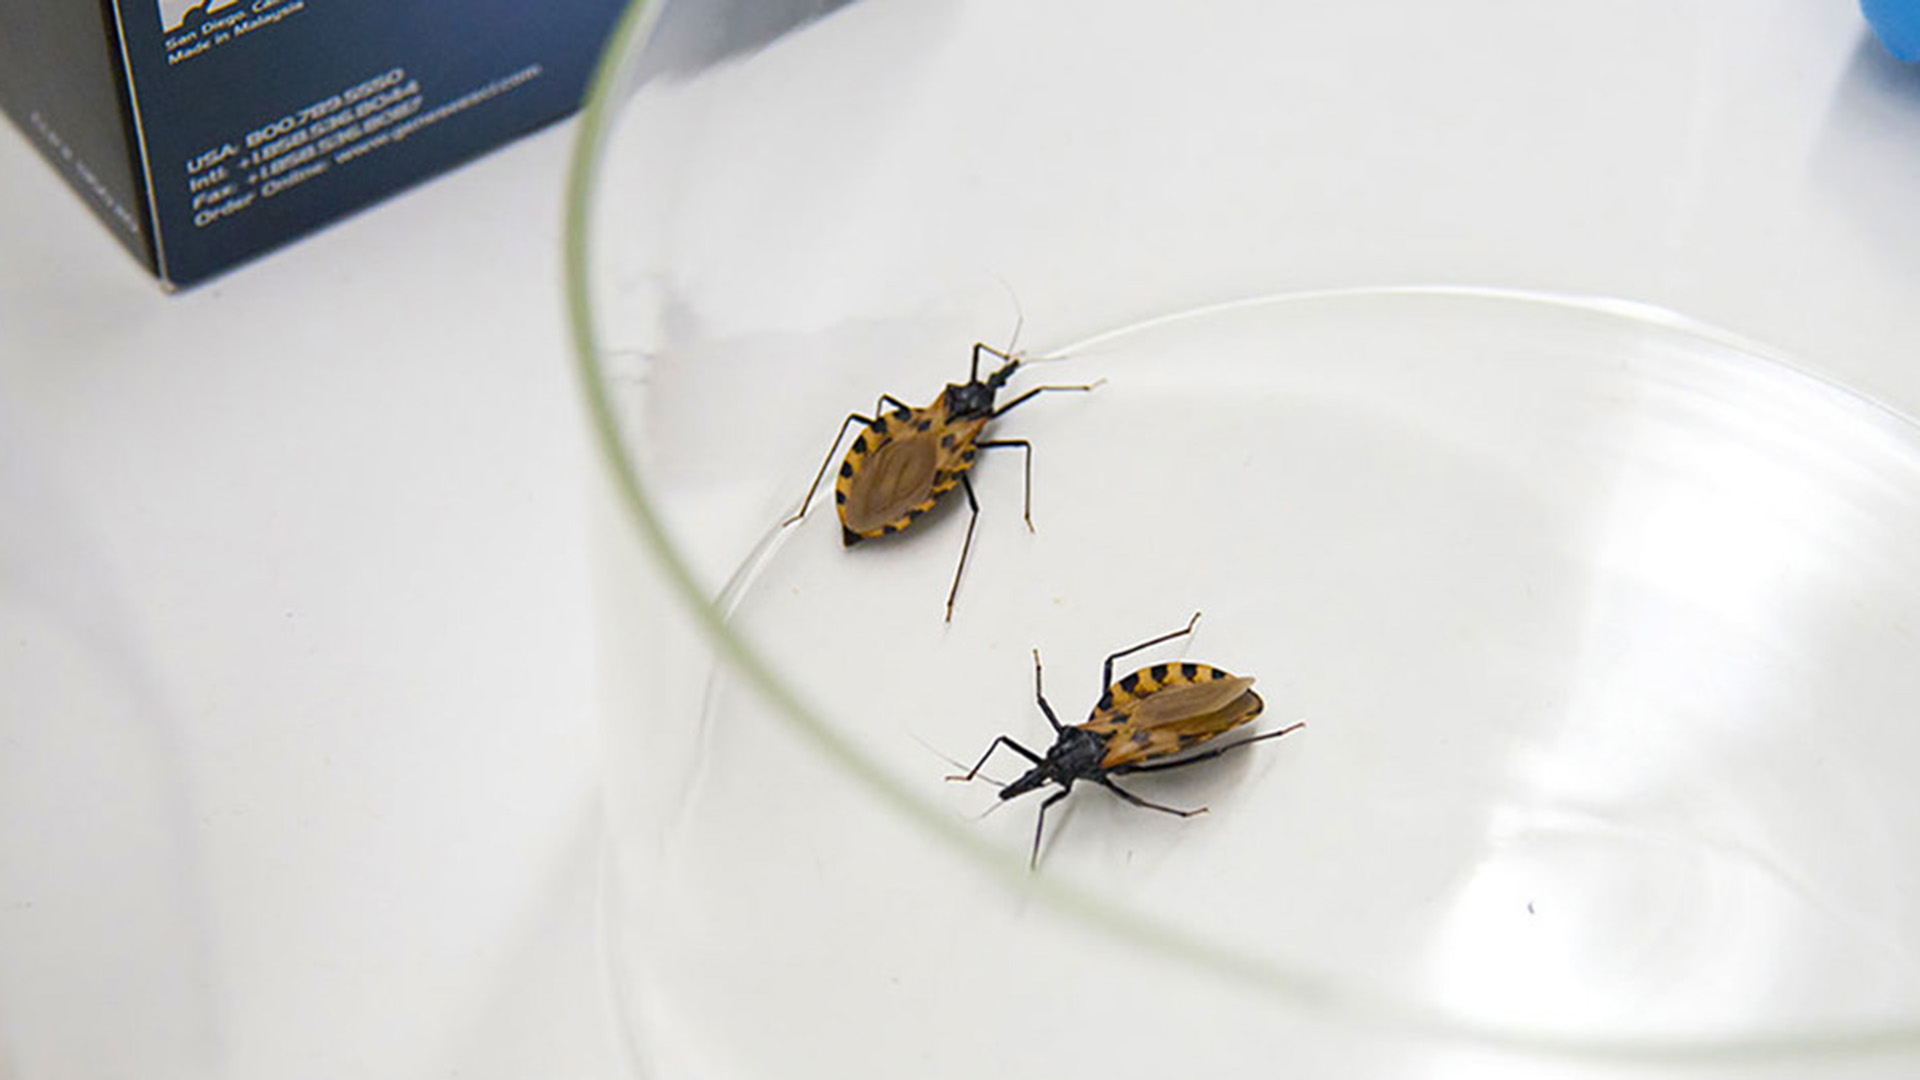 En nuestro país, se estima que hay 7 millones de personas en riesgo de contraer Chagas y 1,6 millones de infectados (ONU: news.un.org)